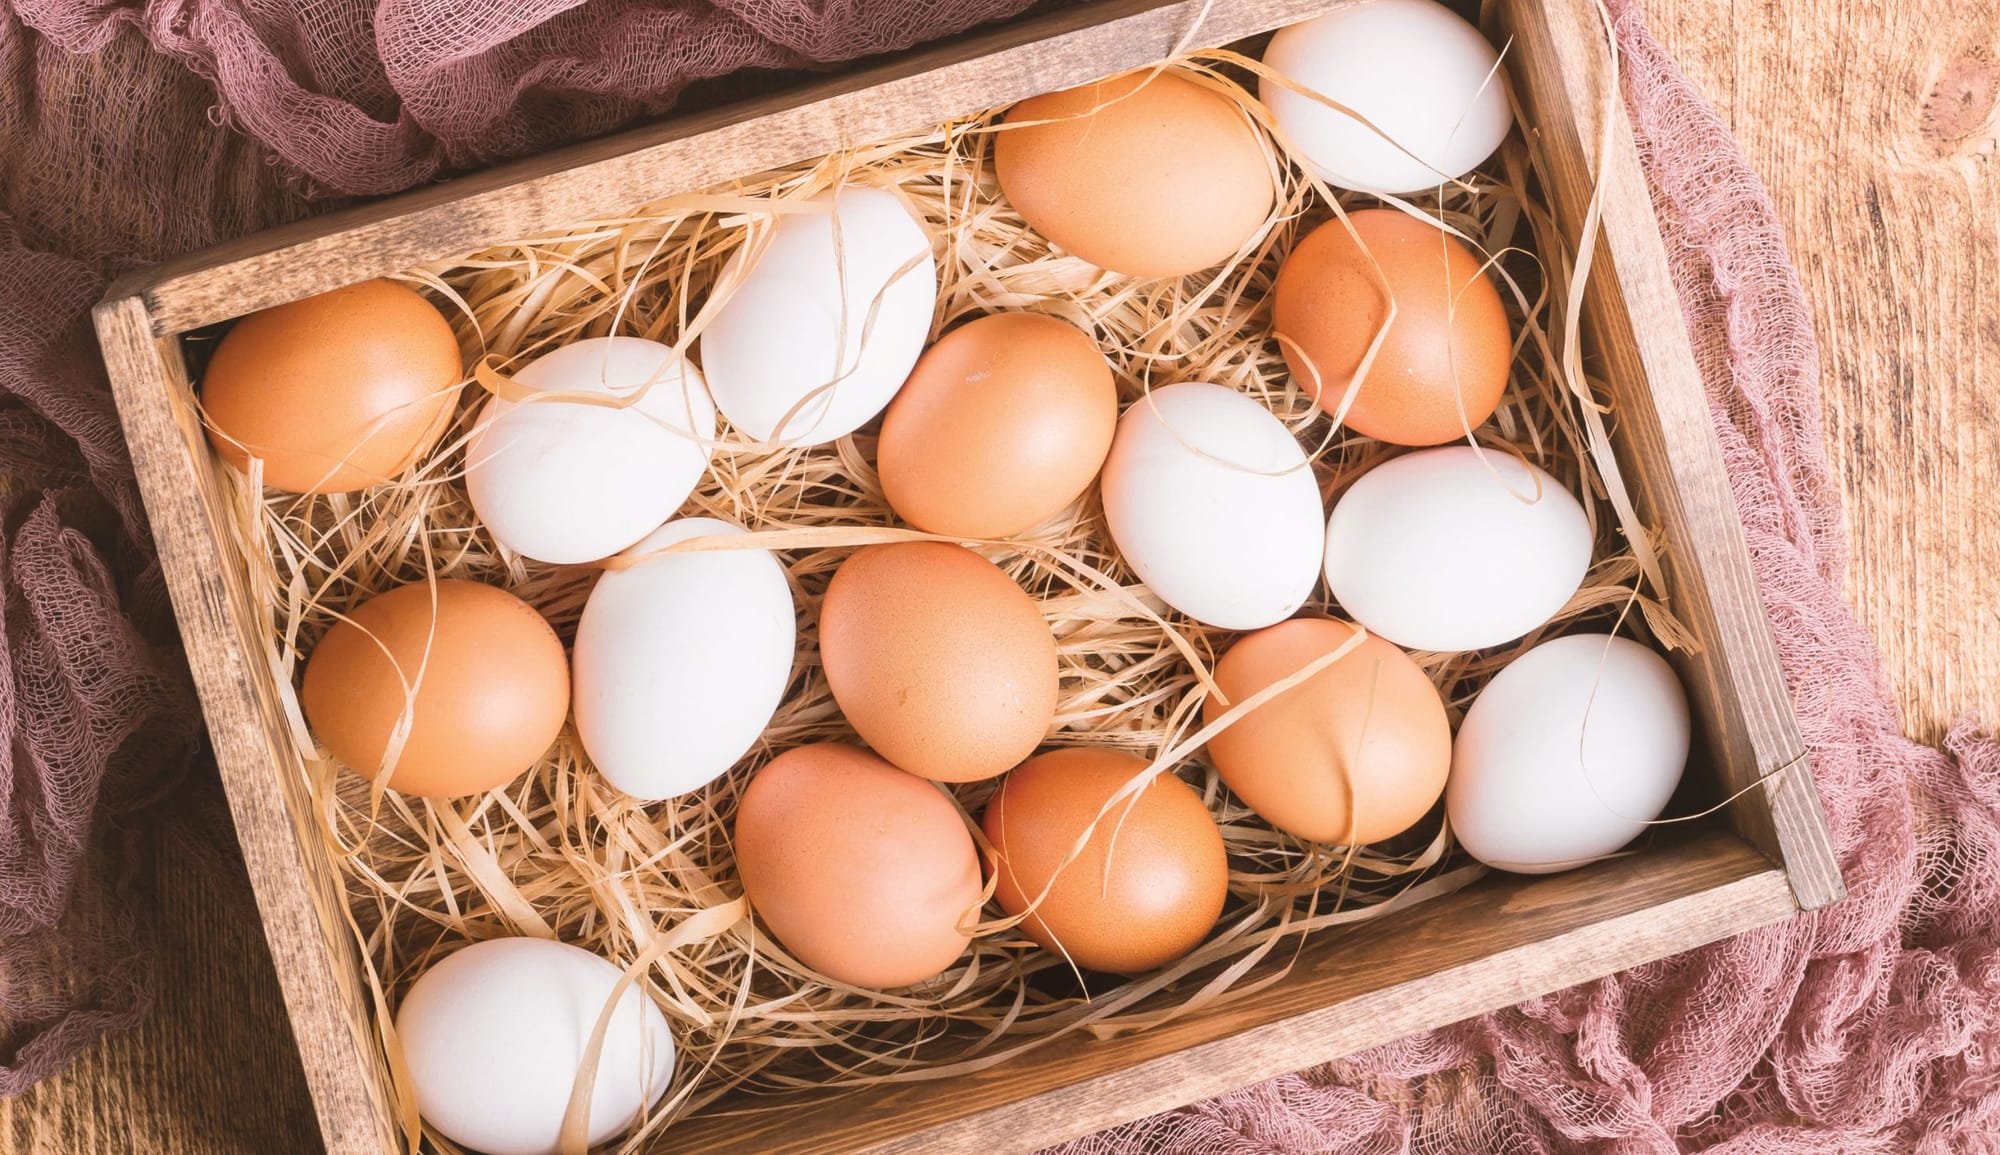 حقائق مذهلة عن البيض قد يتجاهلها البعض